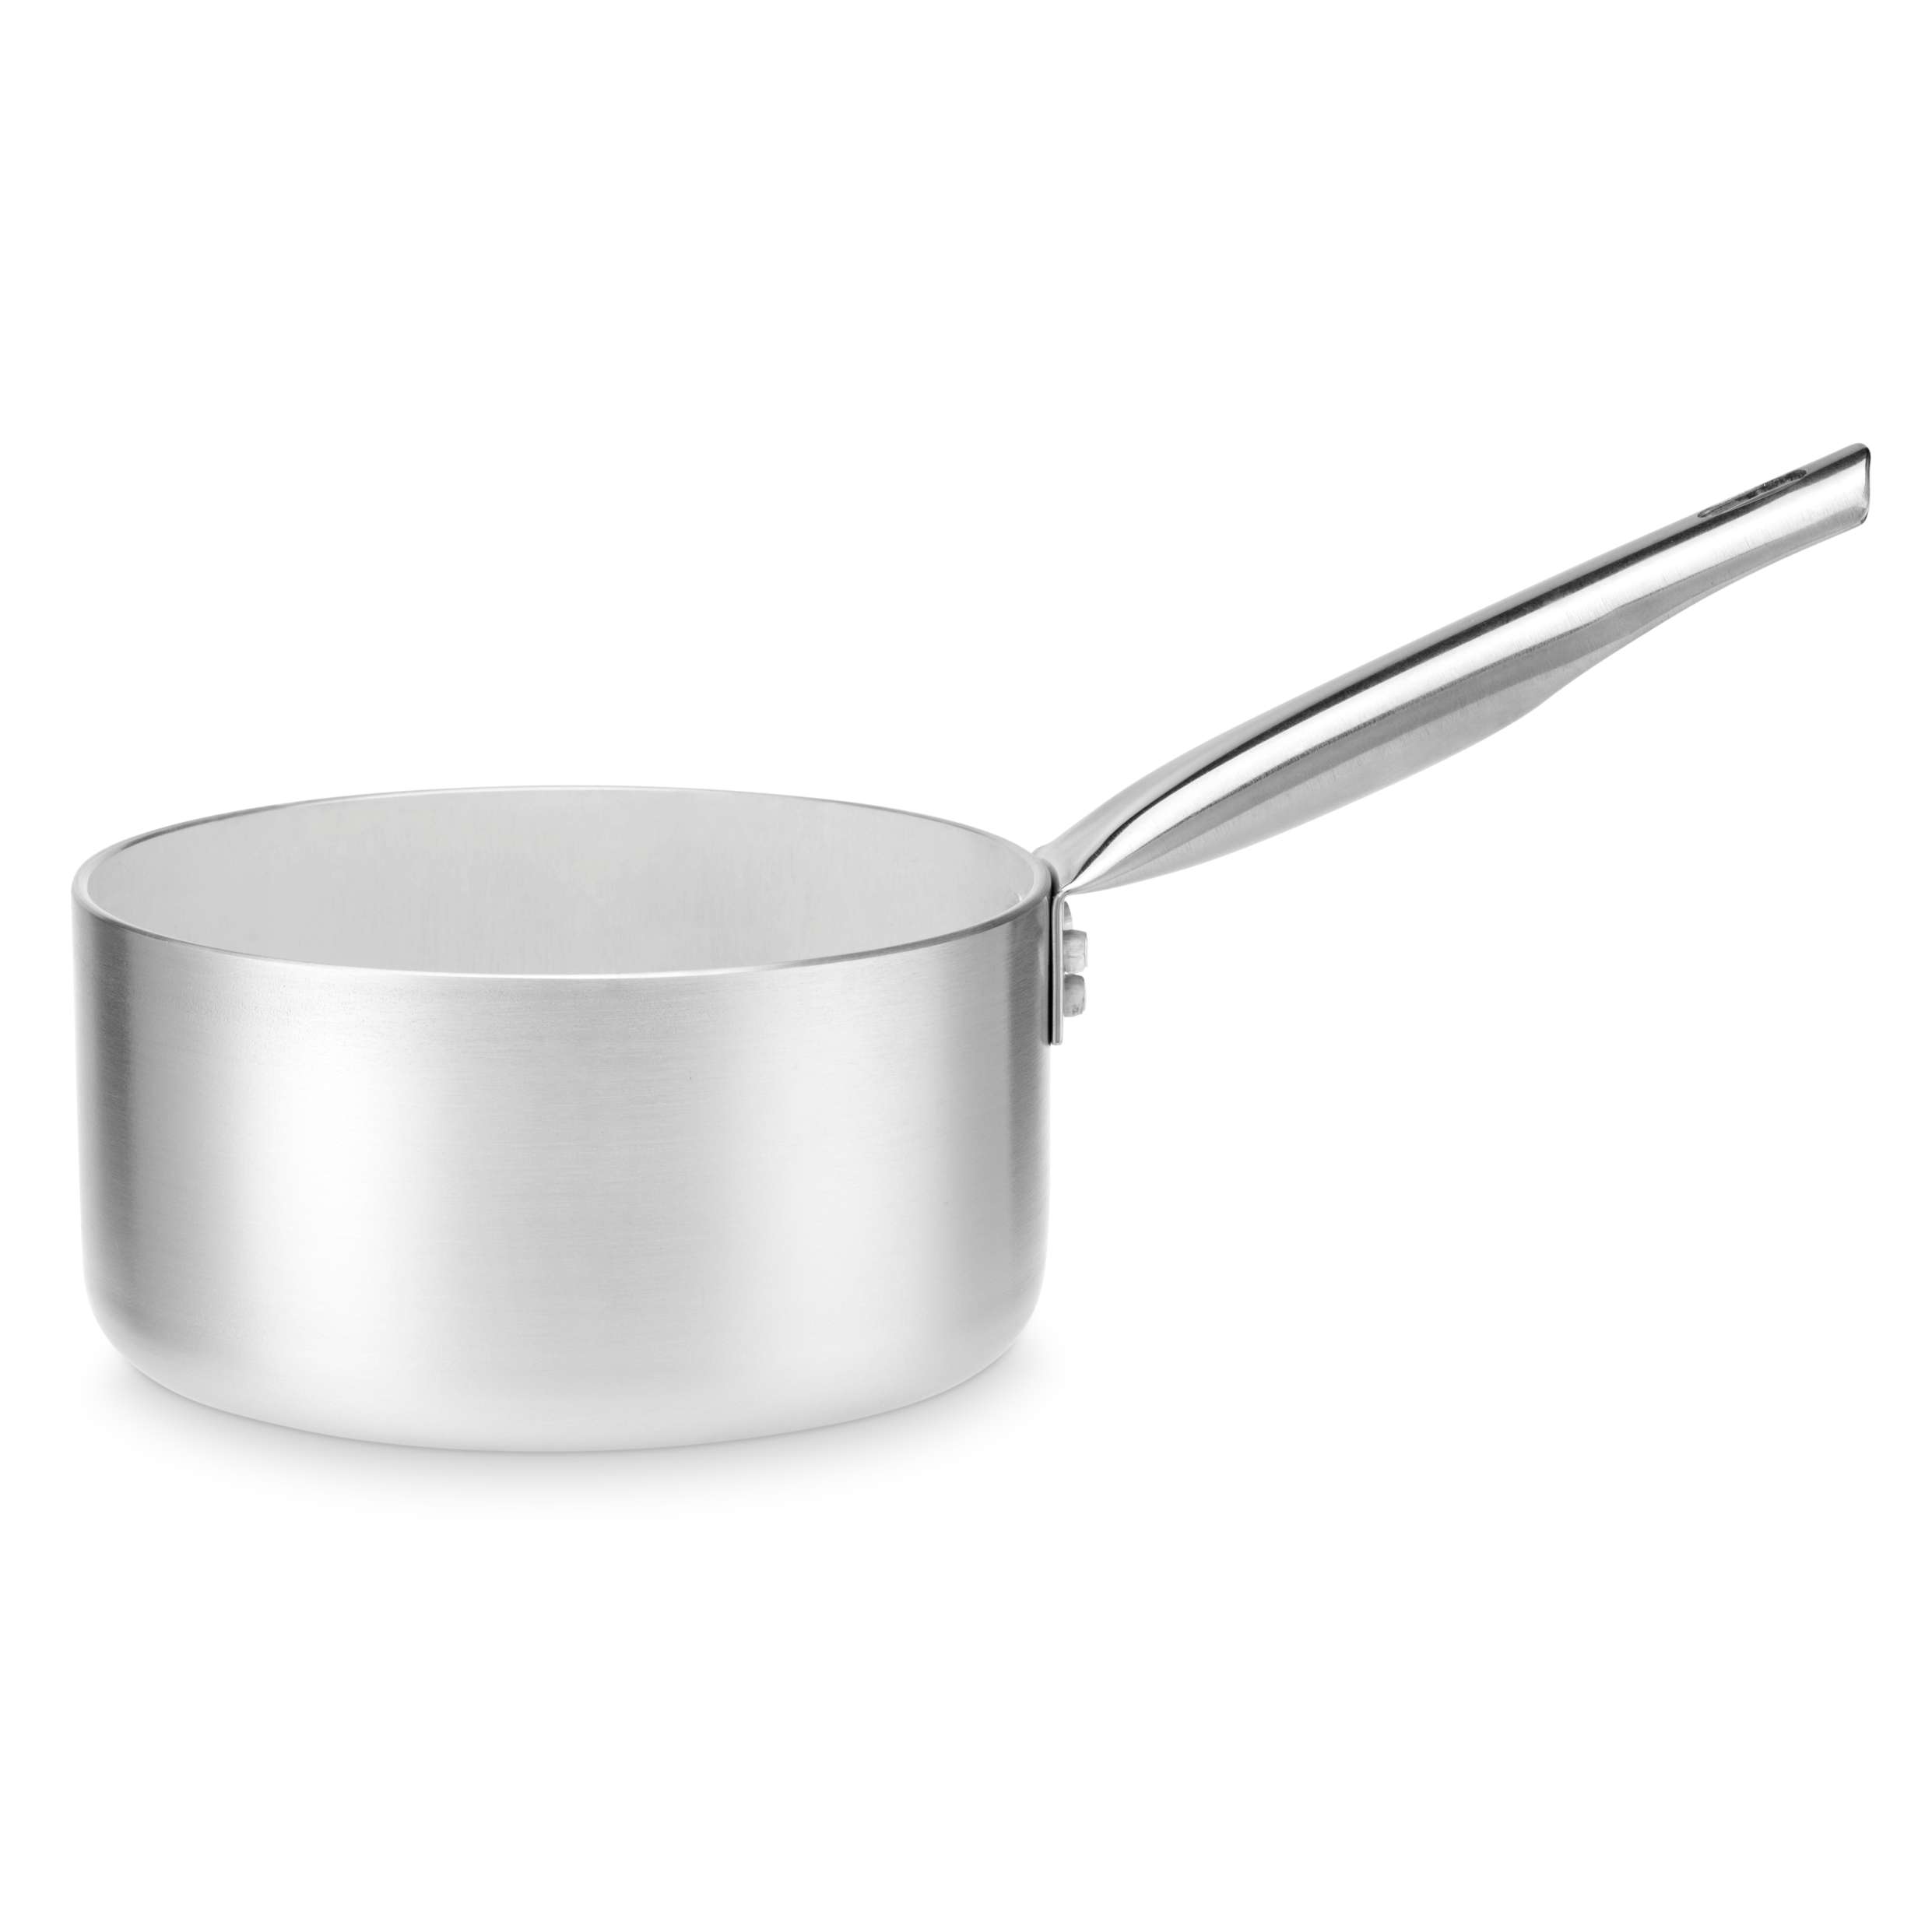 Casseruola per sughi in alluminio con manico – diametro 20 cm – 3 litri -  Borz Cooking Store